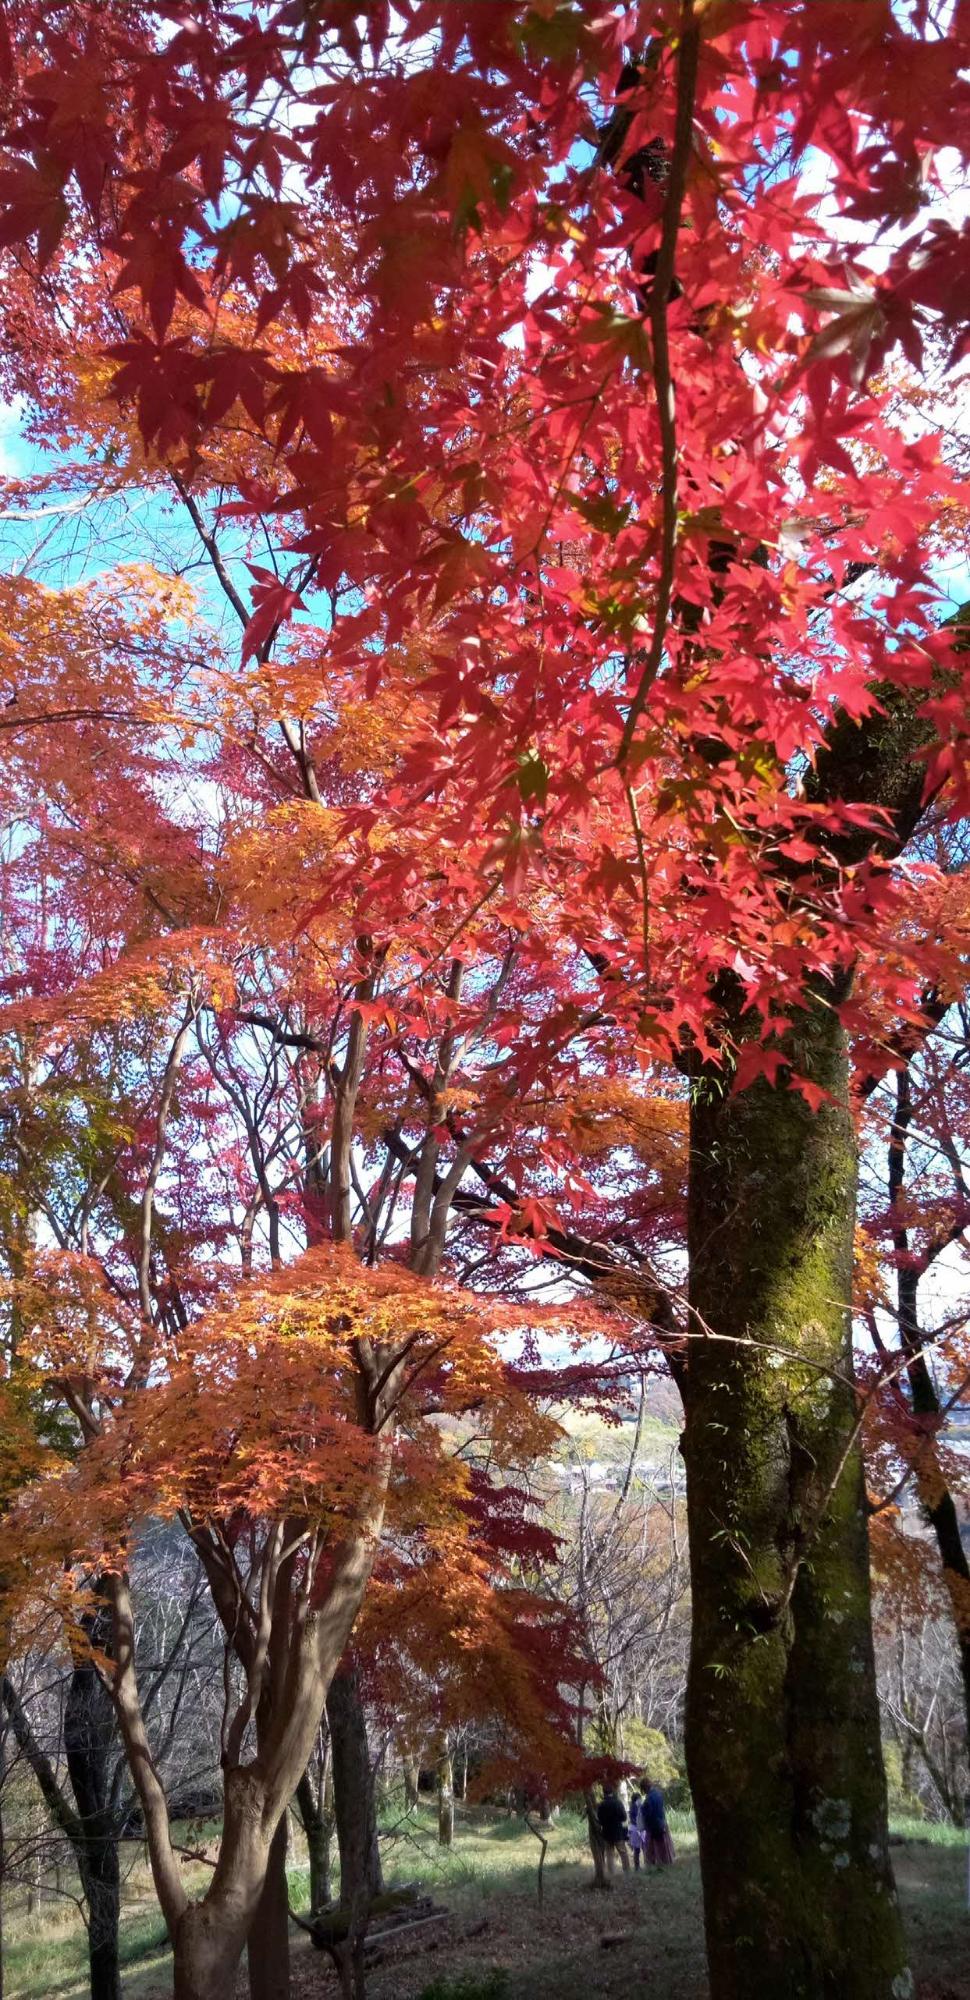 鮮明な青い空を背景に画面いっぱいに入っている赤い紅葉も木